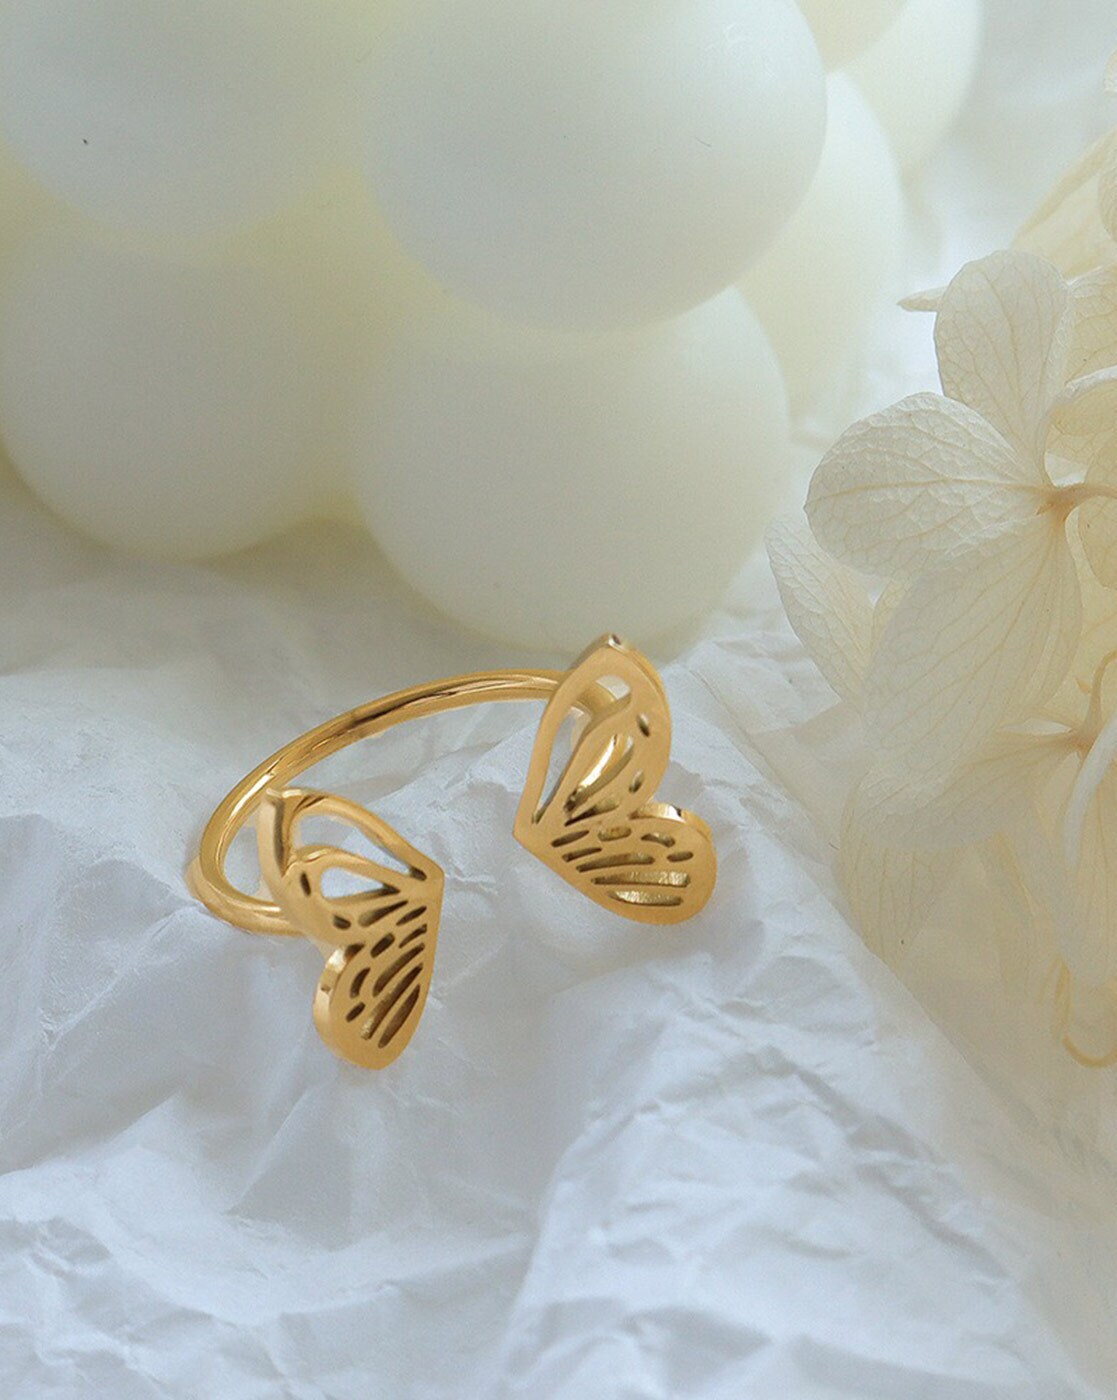 Golden Butterfly Fingerprint Couple Rings